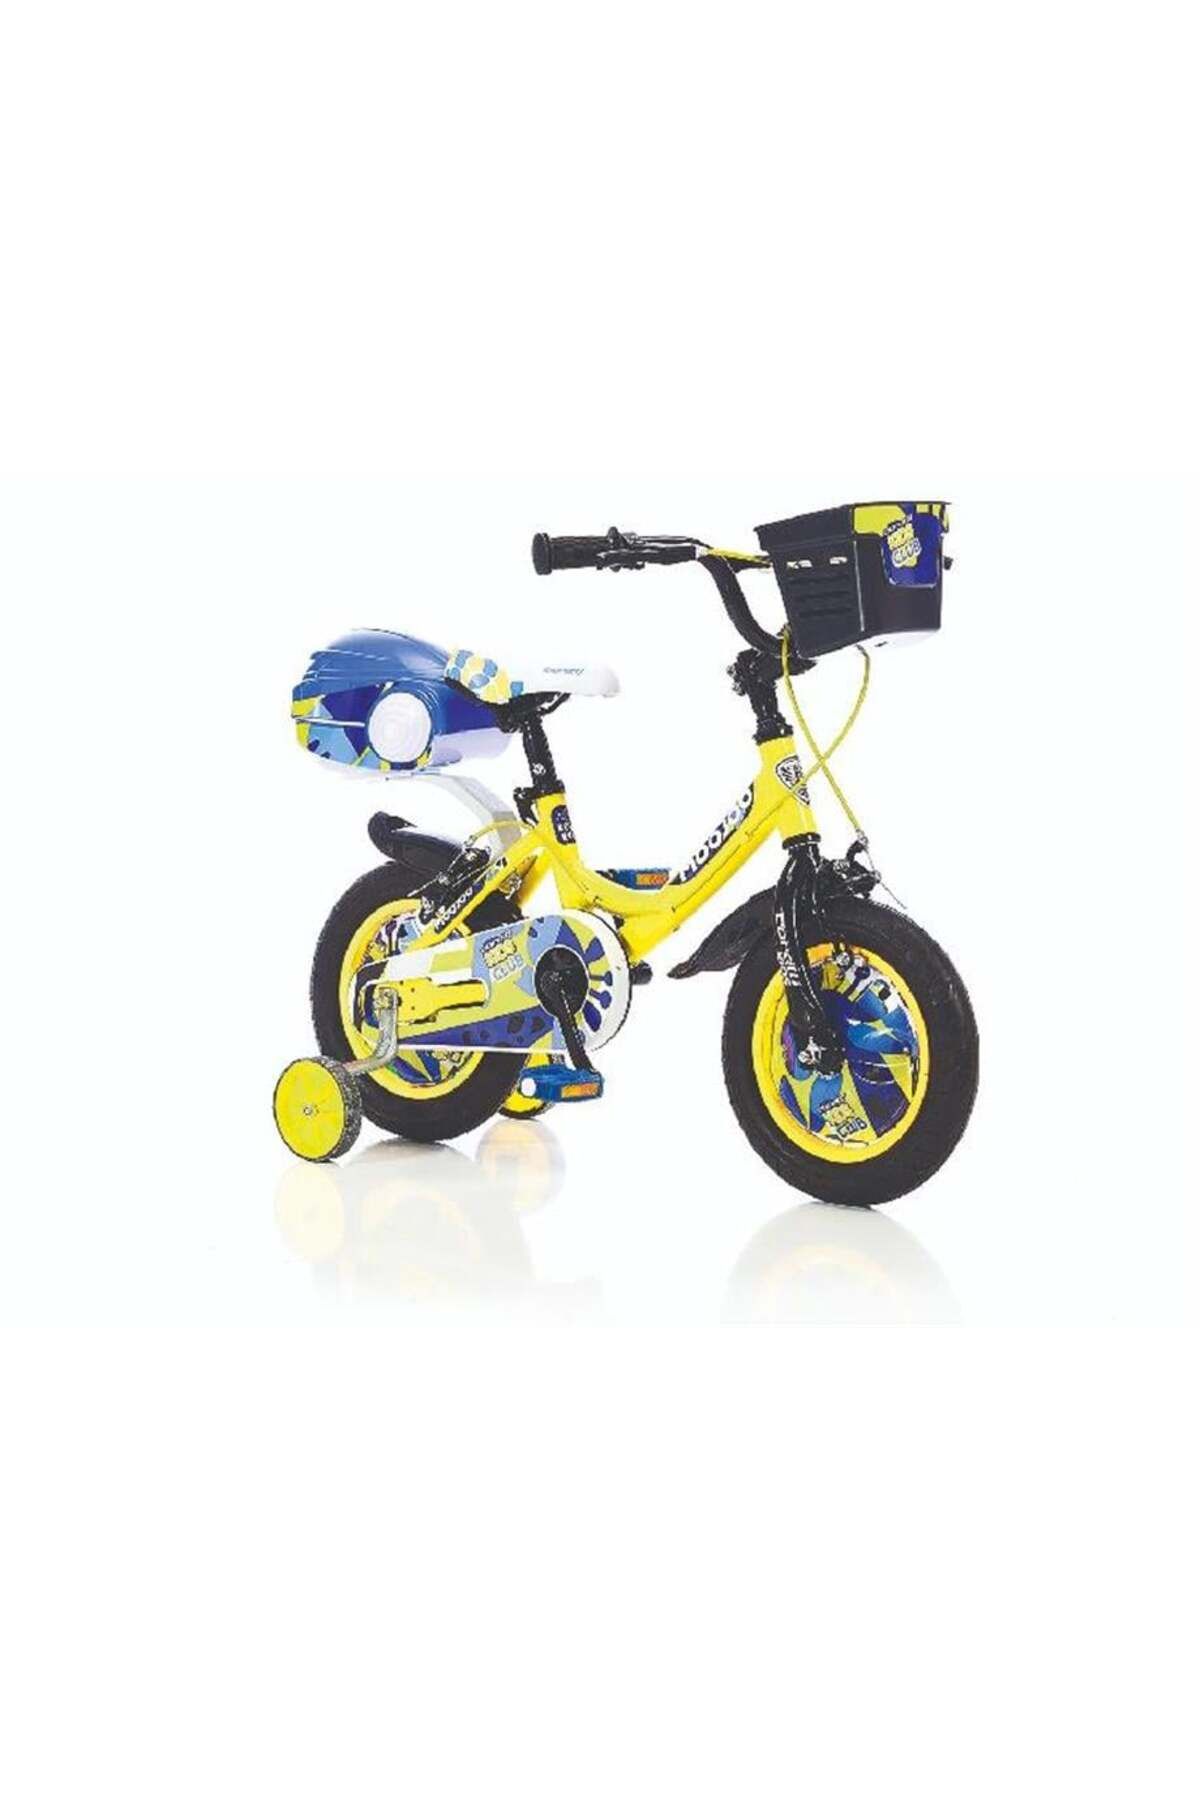 Corelli Moojoo Erkek Çocuk Bisikleti 12 Jant Sarı Beyaz